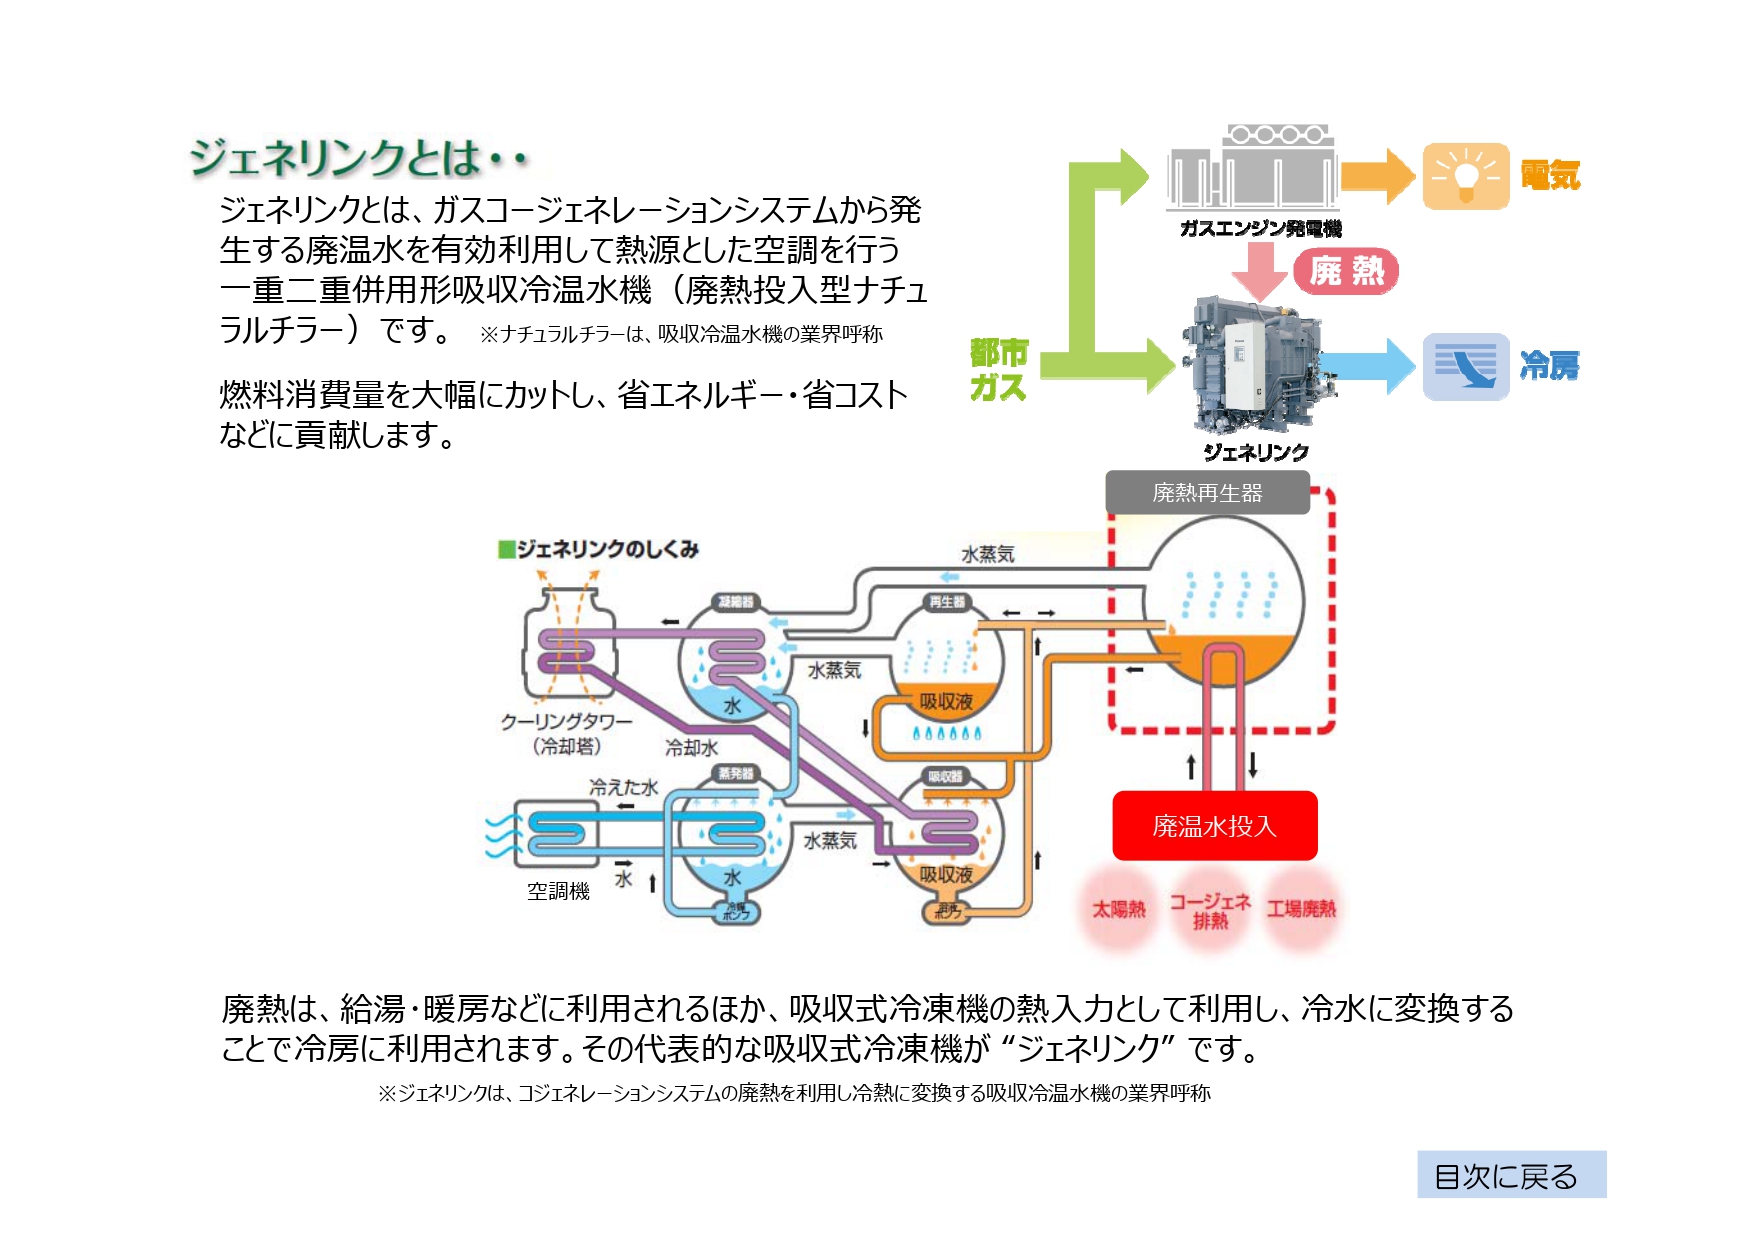 一般社団法人 日本冷凍空調工業会 関連製品 空調設備用機器